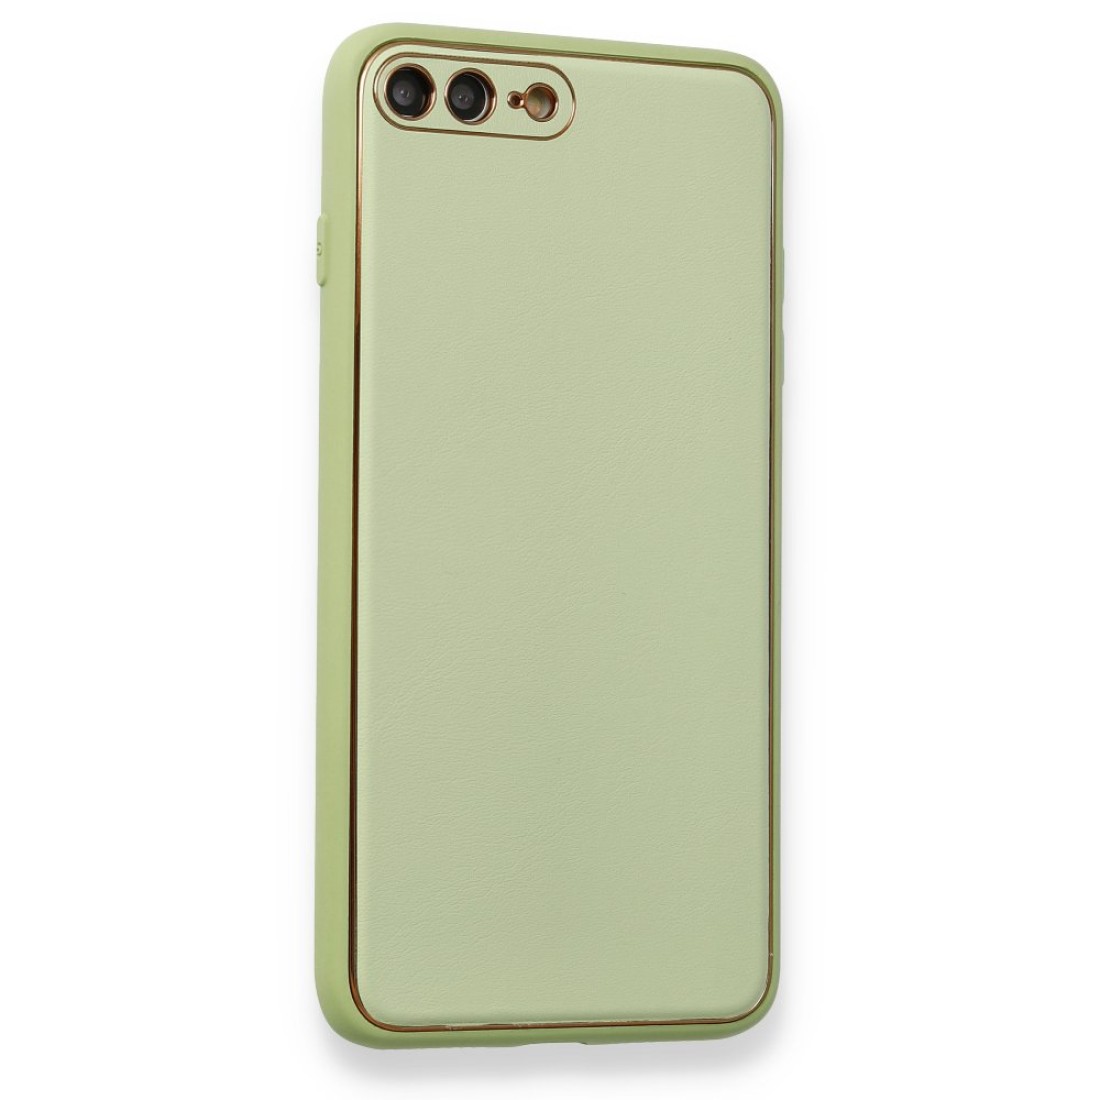 Apple iPhone 8 Plus Kılıf Coco Deri Silikon Kapak - Açık Yeşil